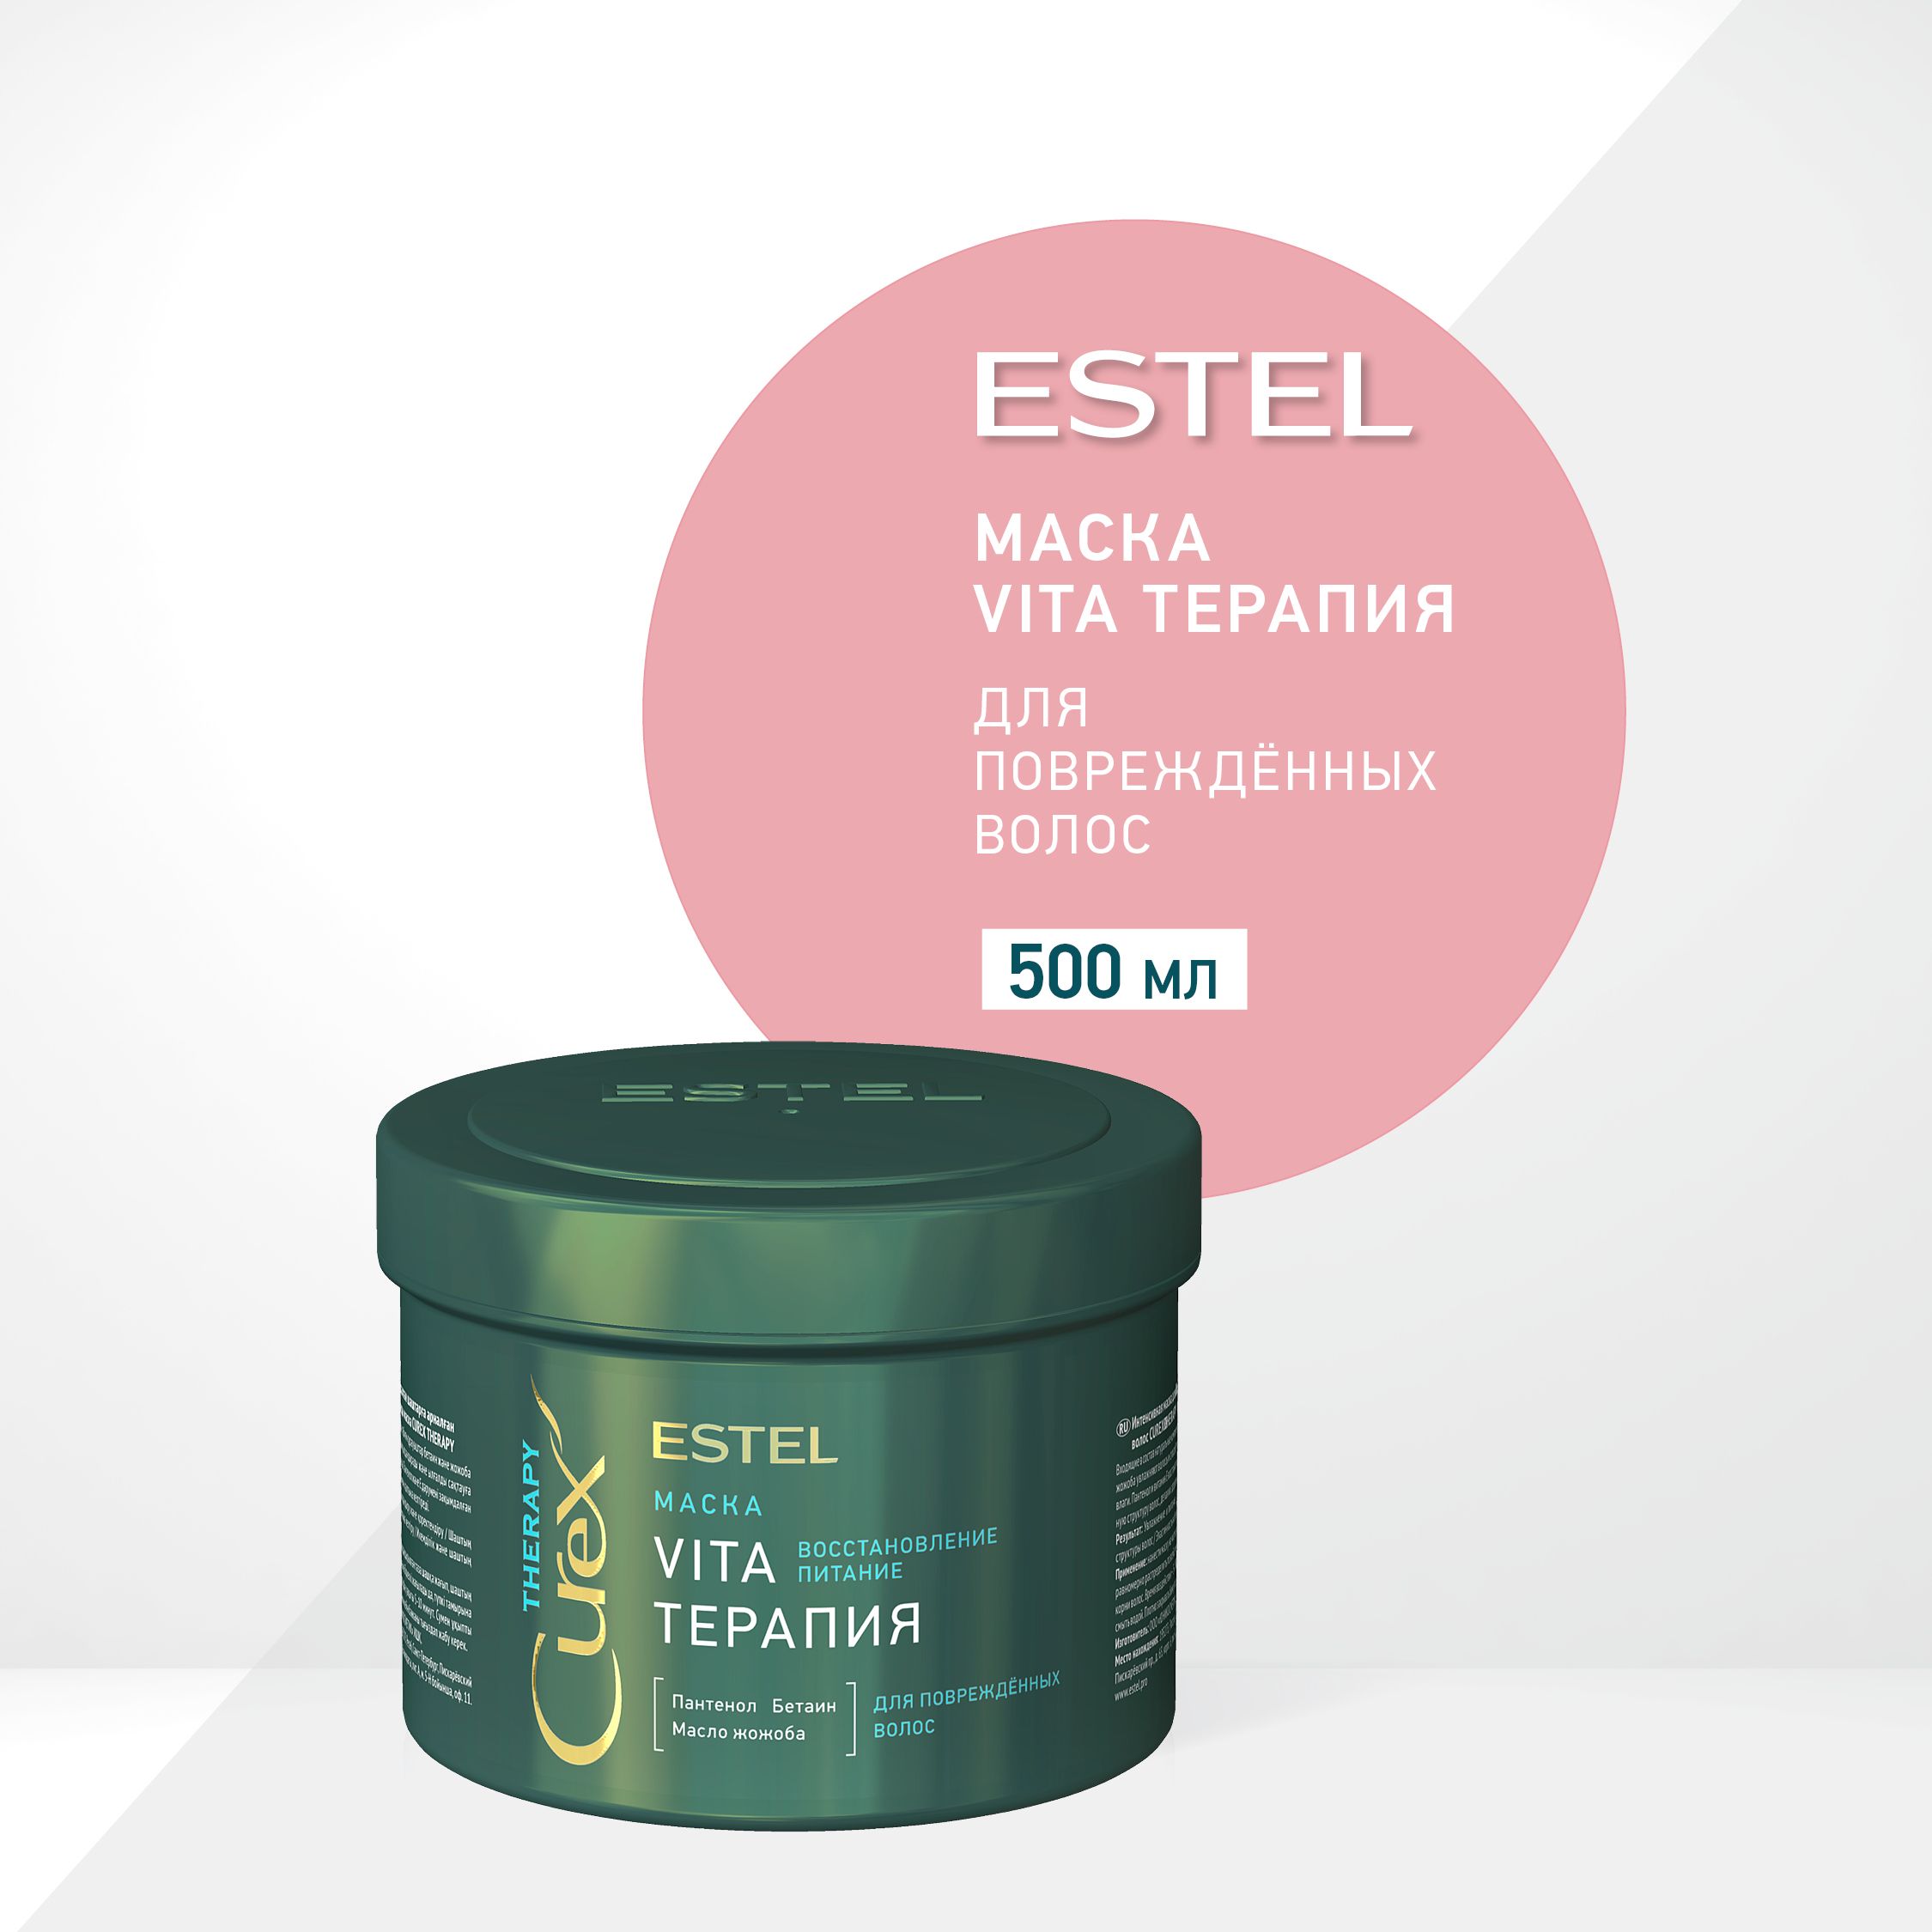 Маска vita терапия. Estel Curex маска Vita терапия Therapy 500. Маска Vita - терапия Estel Curex Therapy для повреждённых волос 500. Estel Curex Therapy интенсивная маска для поврежденных волос Vita-терапия.